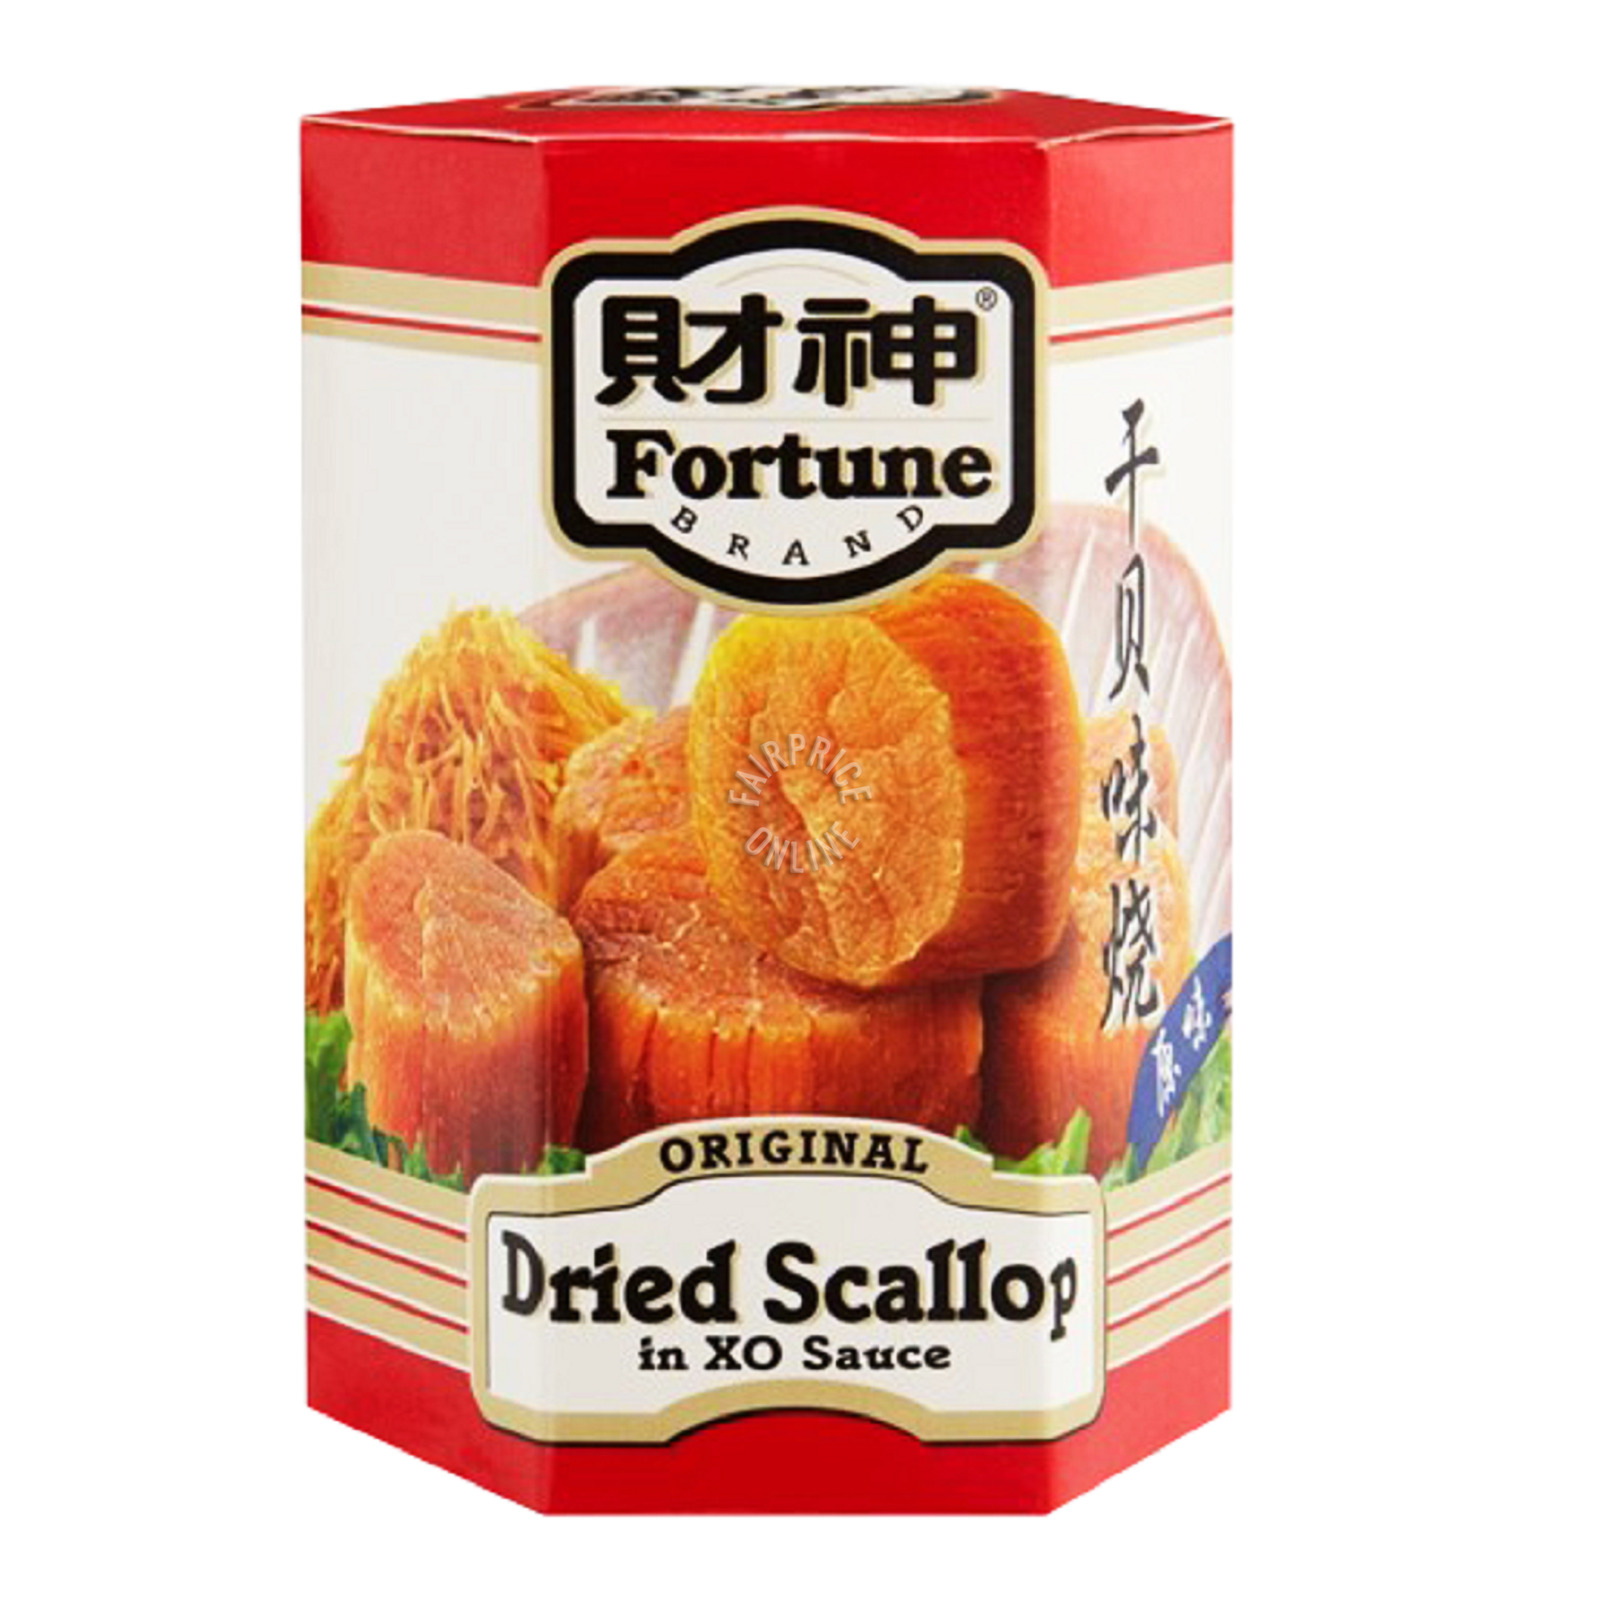 Fortune Dried Scallop in XO Sauce - Original